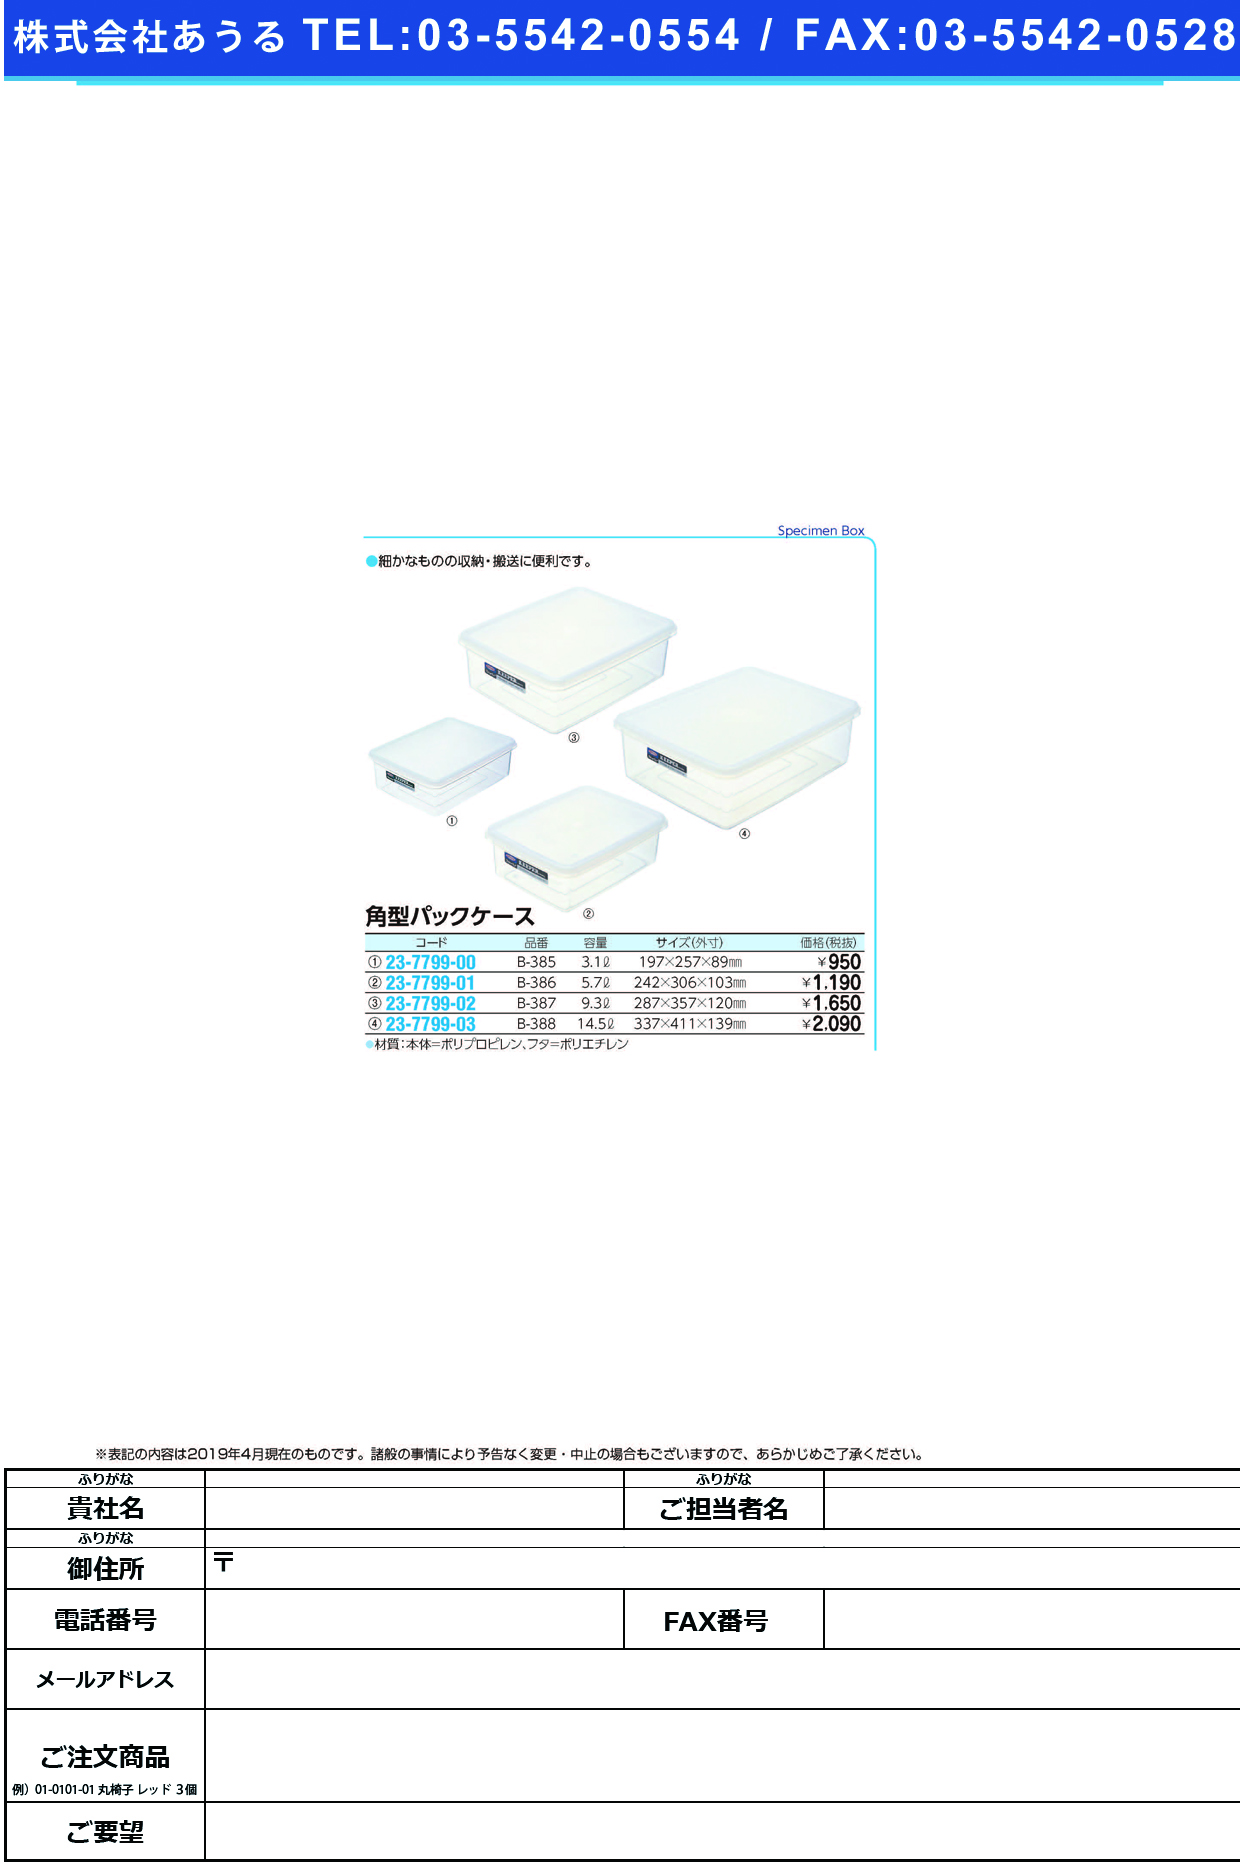 (23-7799-00)角型パックケース B-385(3.1L) ｶｸｶﾞﾀﾊﾟｯｸｹｰｽ【1個単位】【2019年カタログ商品】